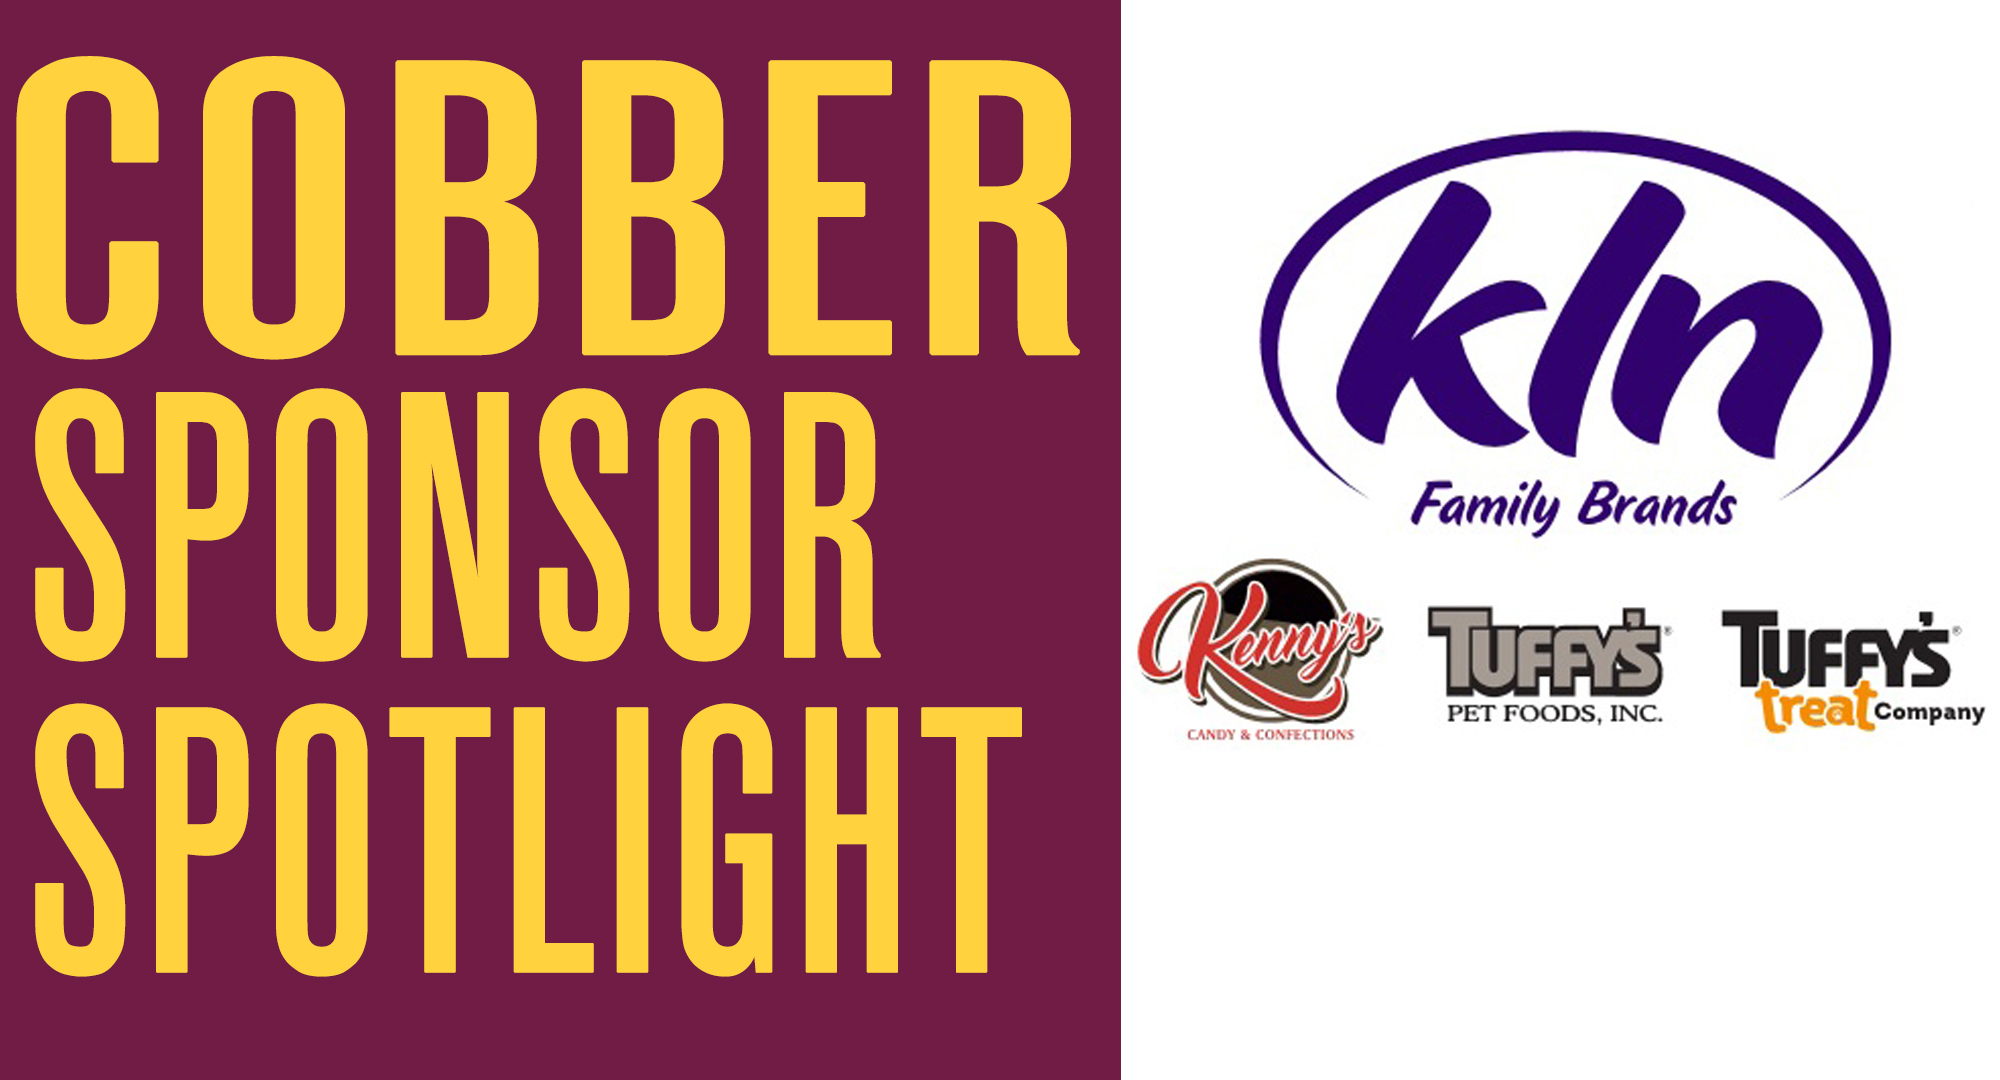 Cobber Sponsor Spotlight - KLN Family Brands